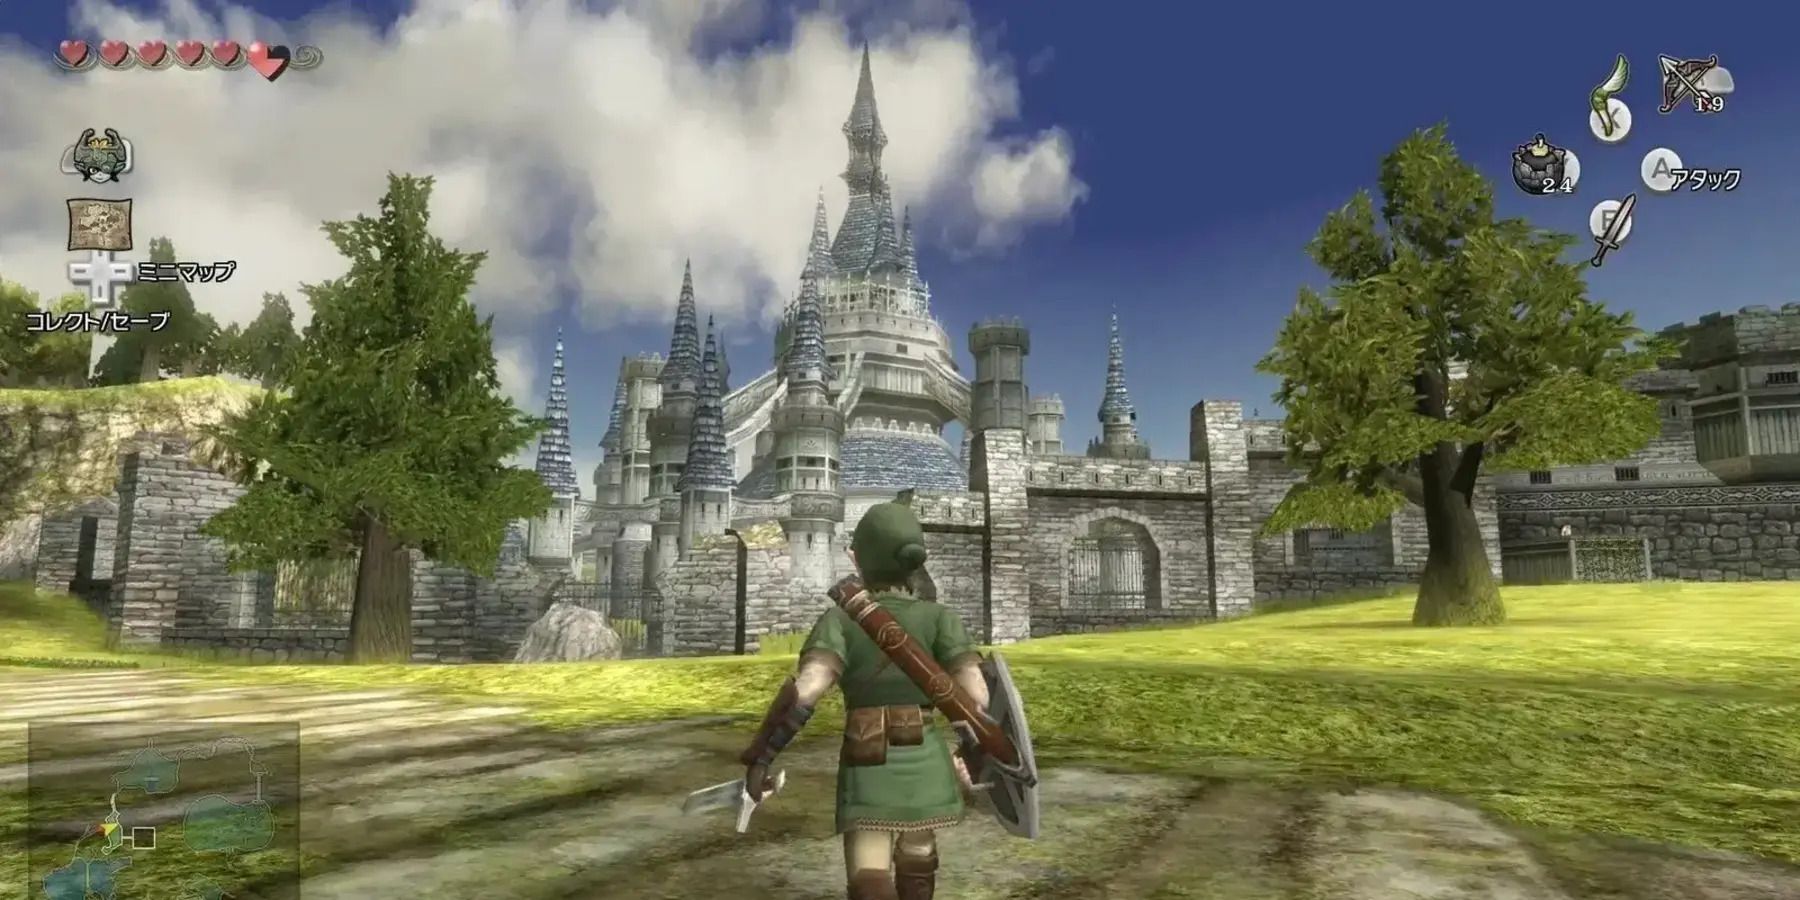 The Legend of Zelda: Twilight Princess gameplay